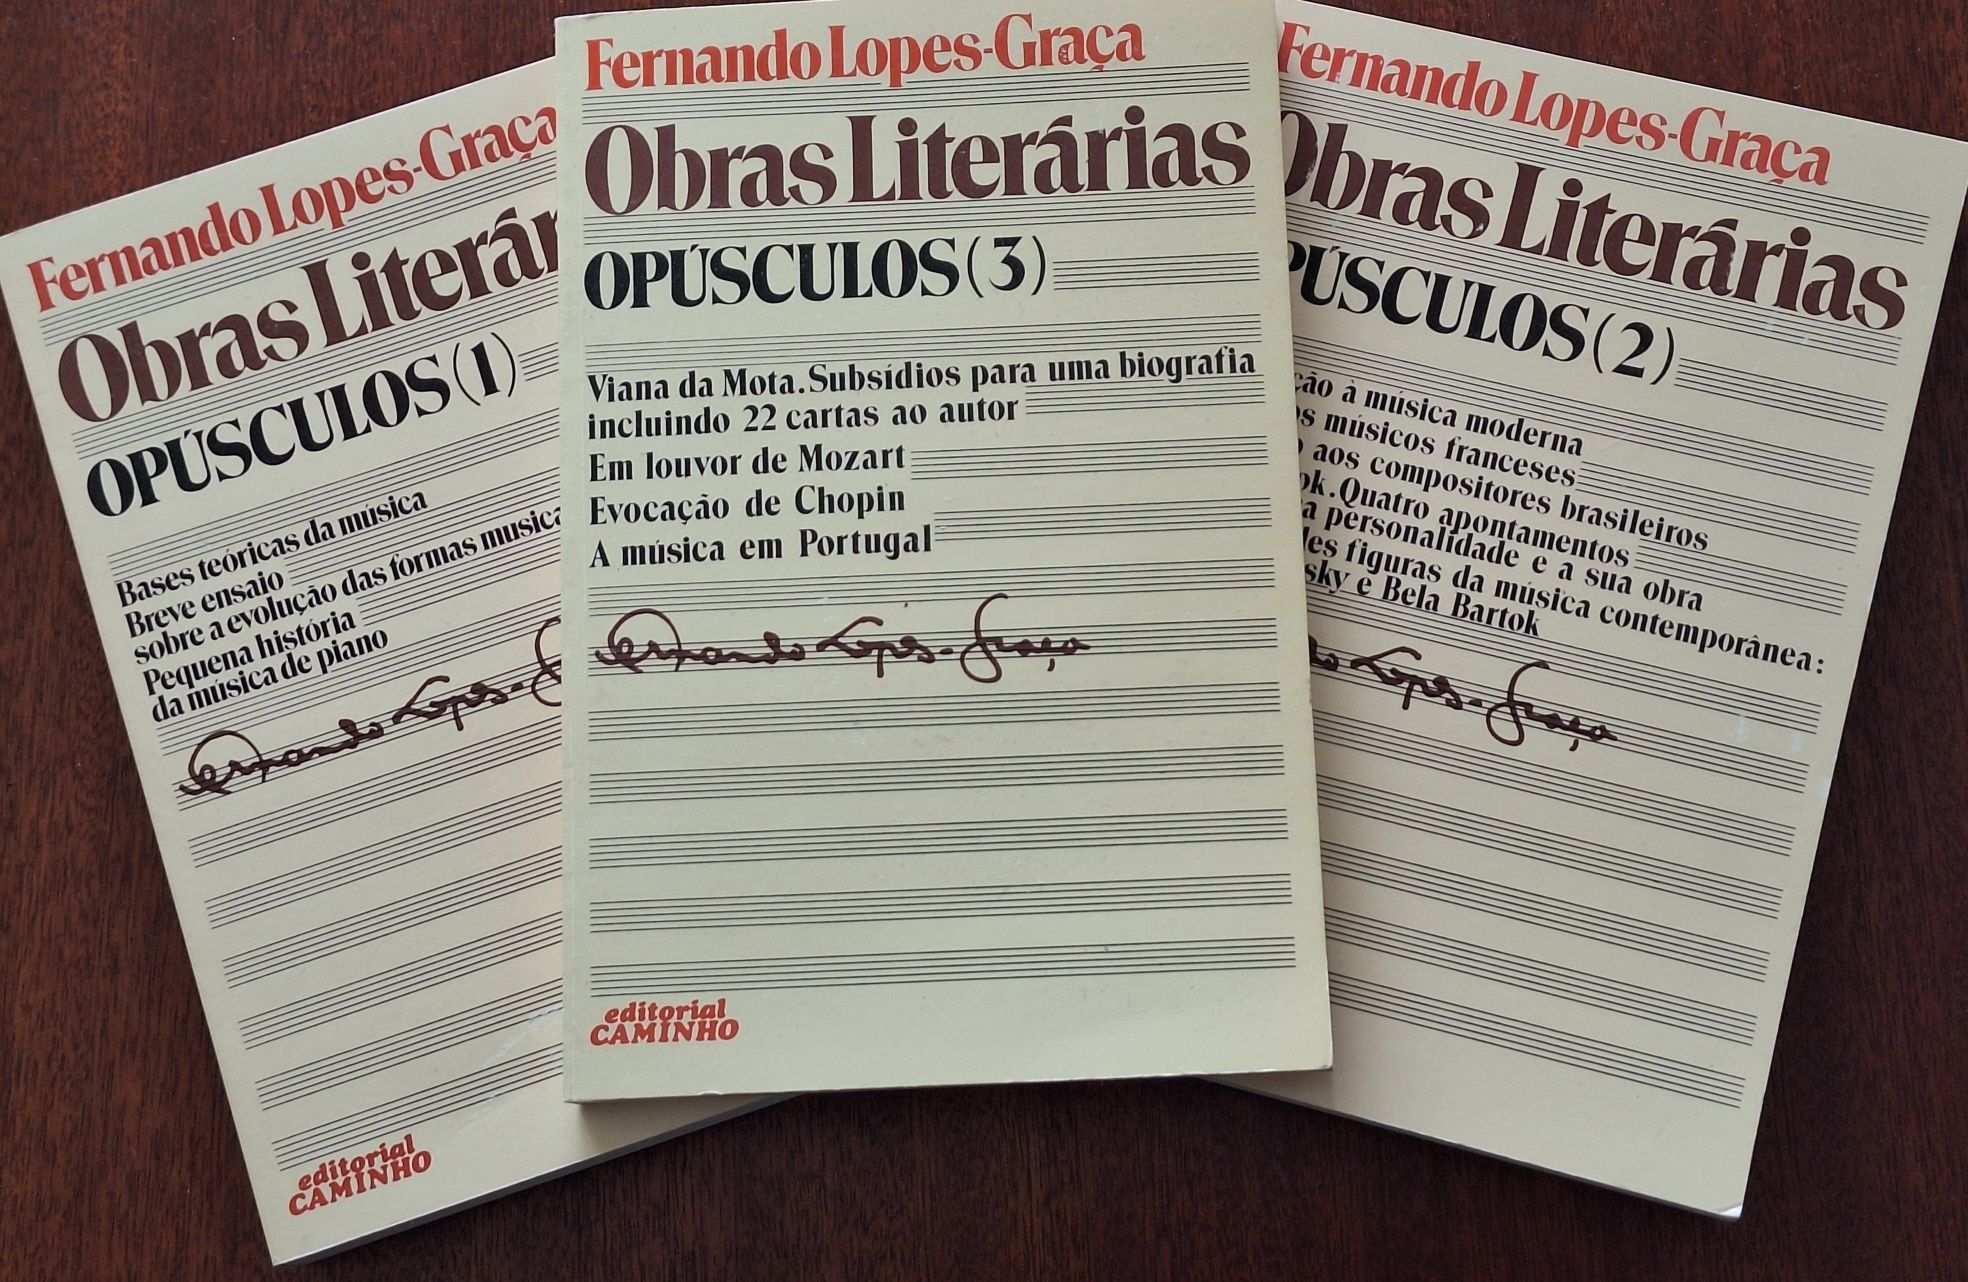 Obras literarias Fernando Lopes Graça